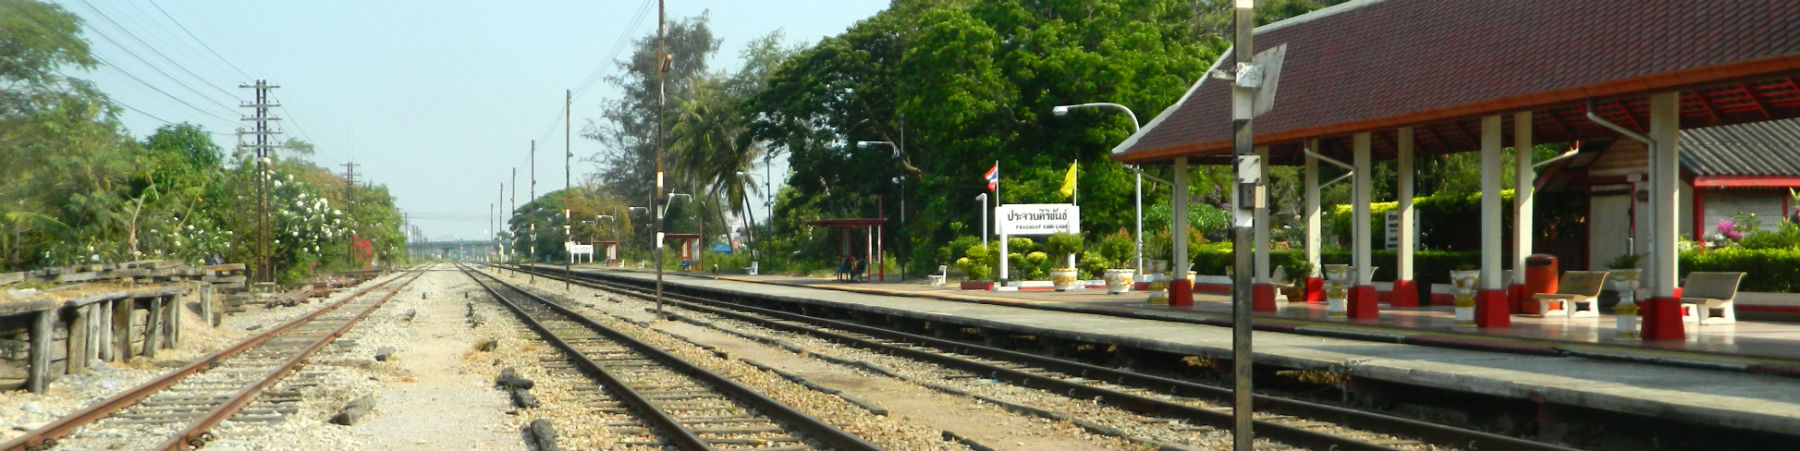 Prachuap Khiri Khan Railway Station